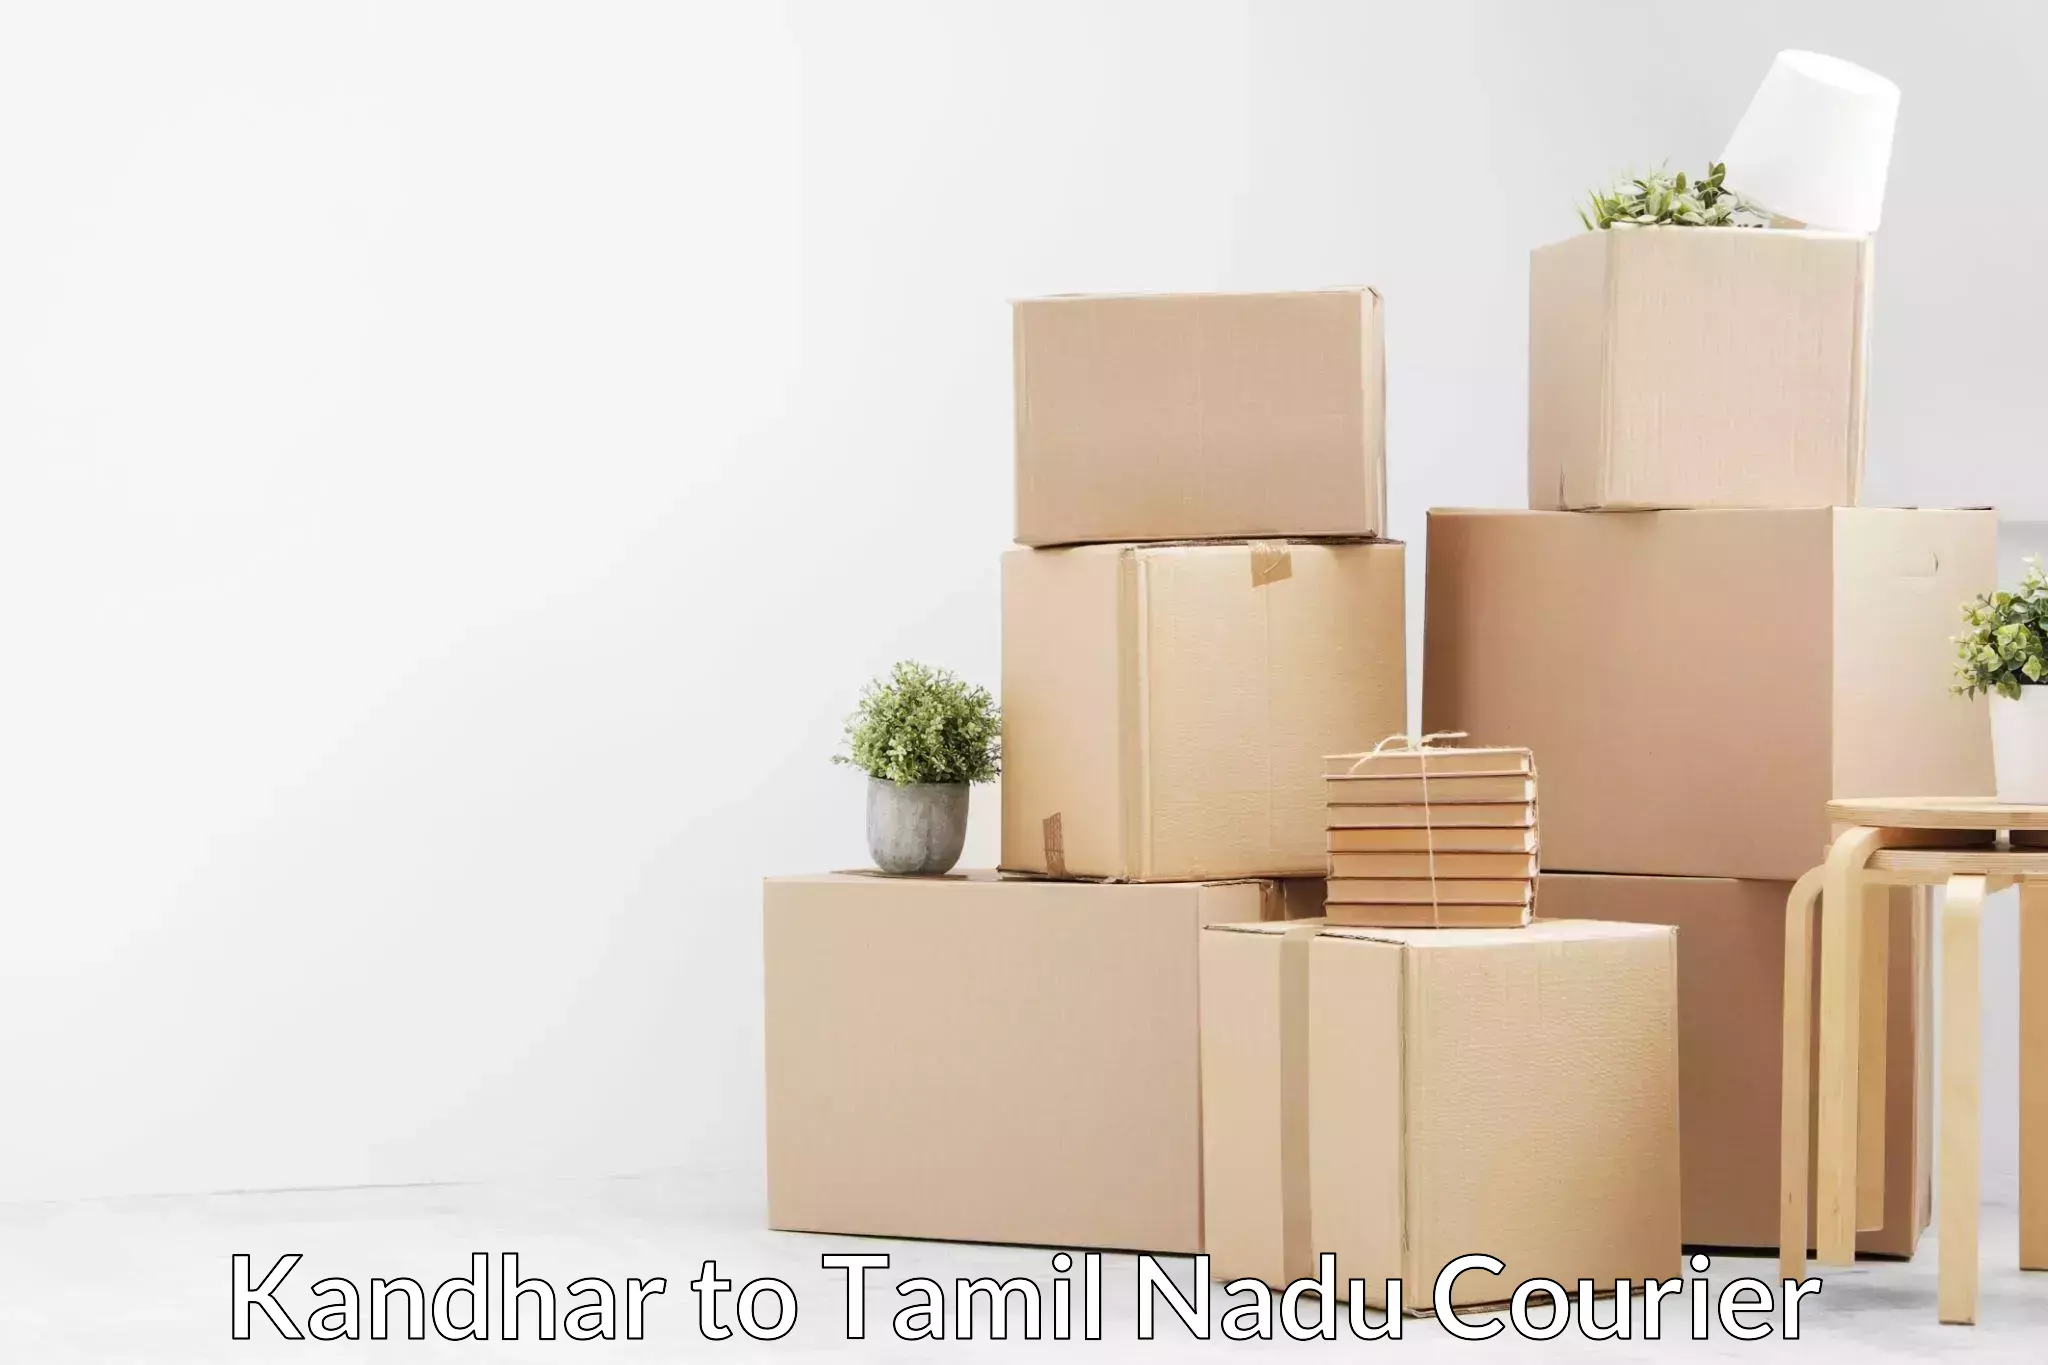 Furniture moving experts Kandhar to Maharajapuram